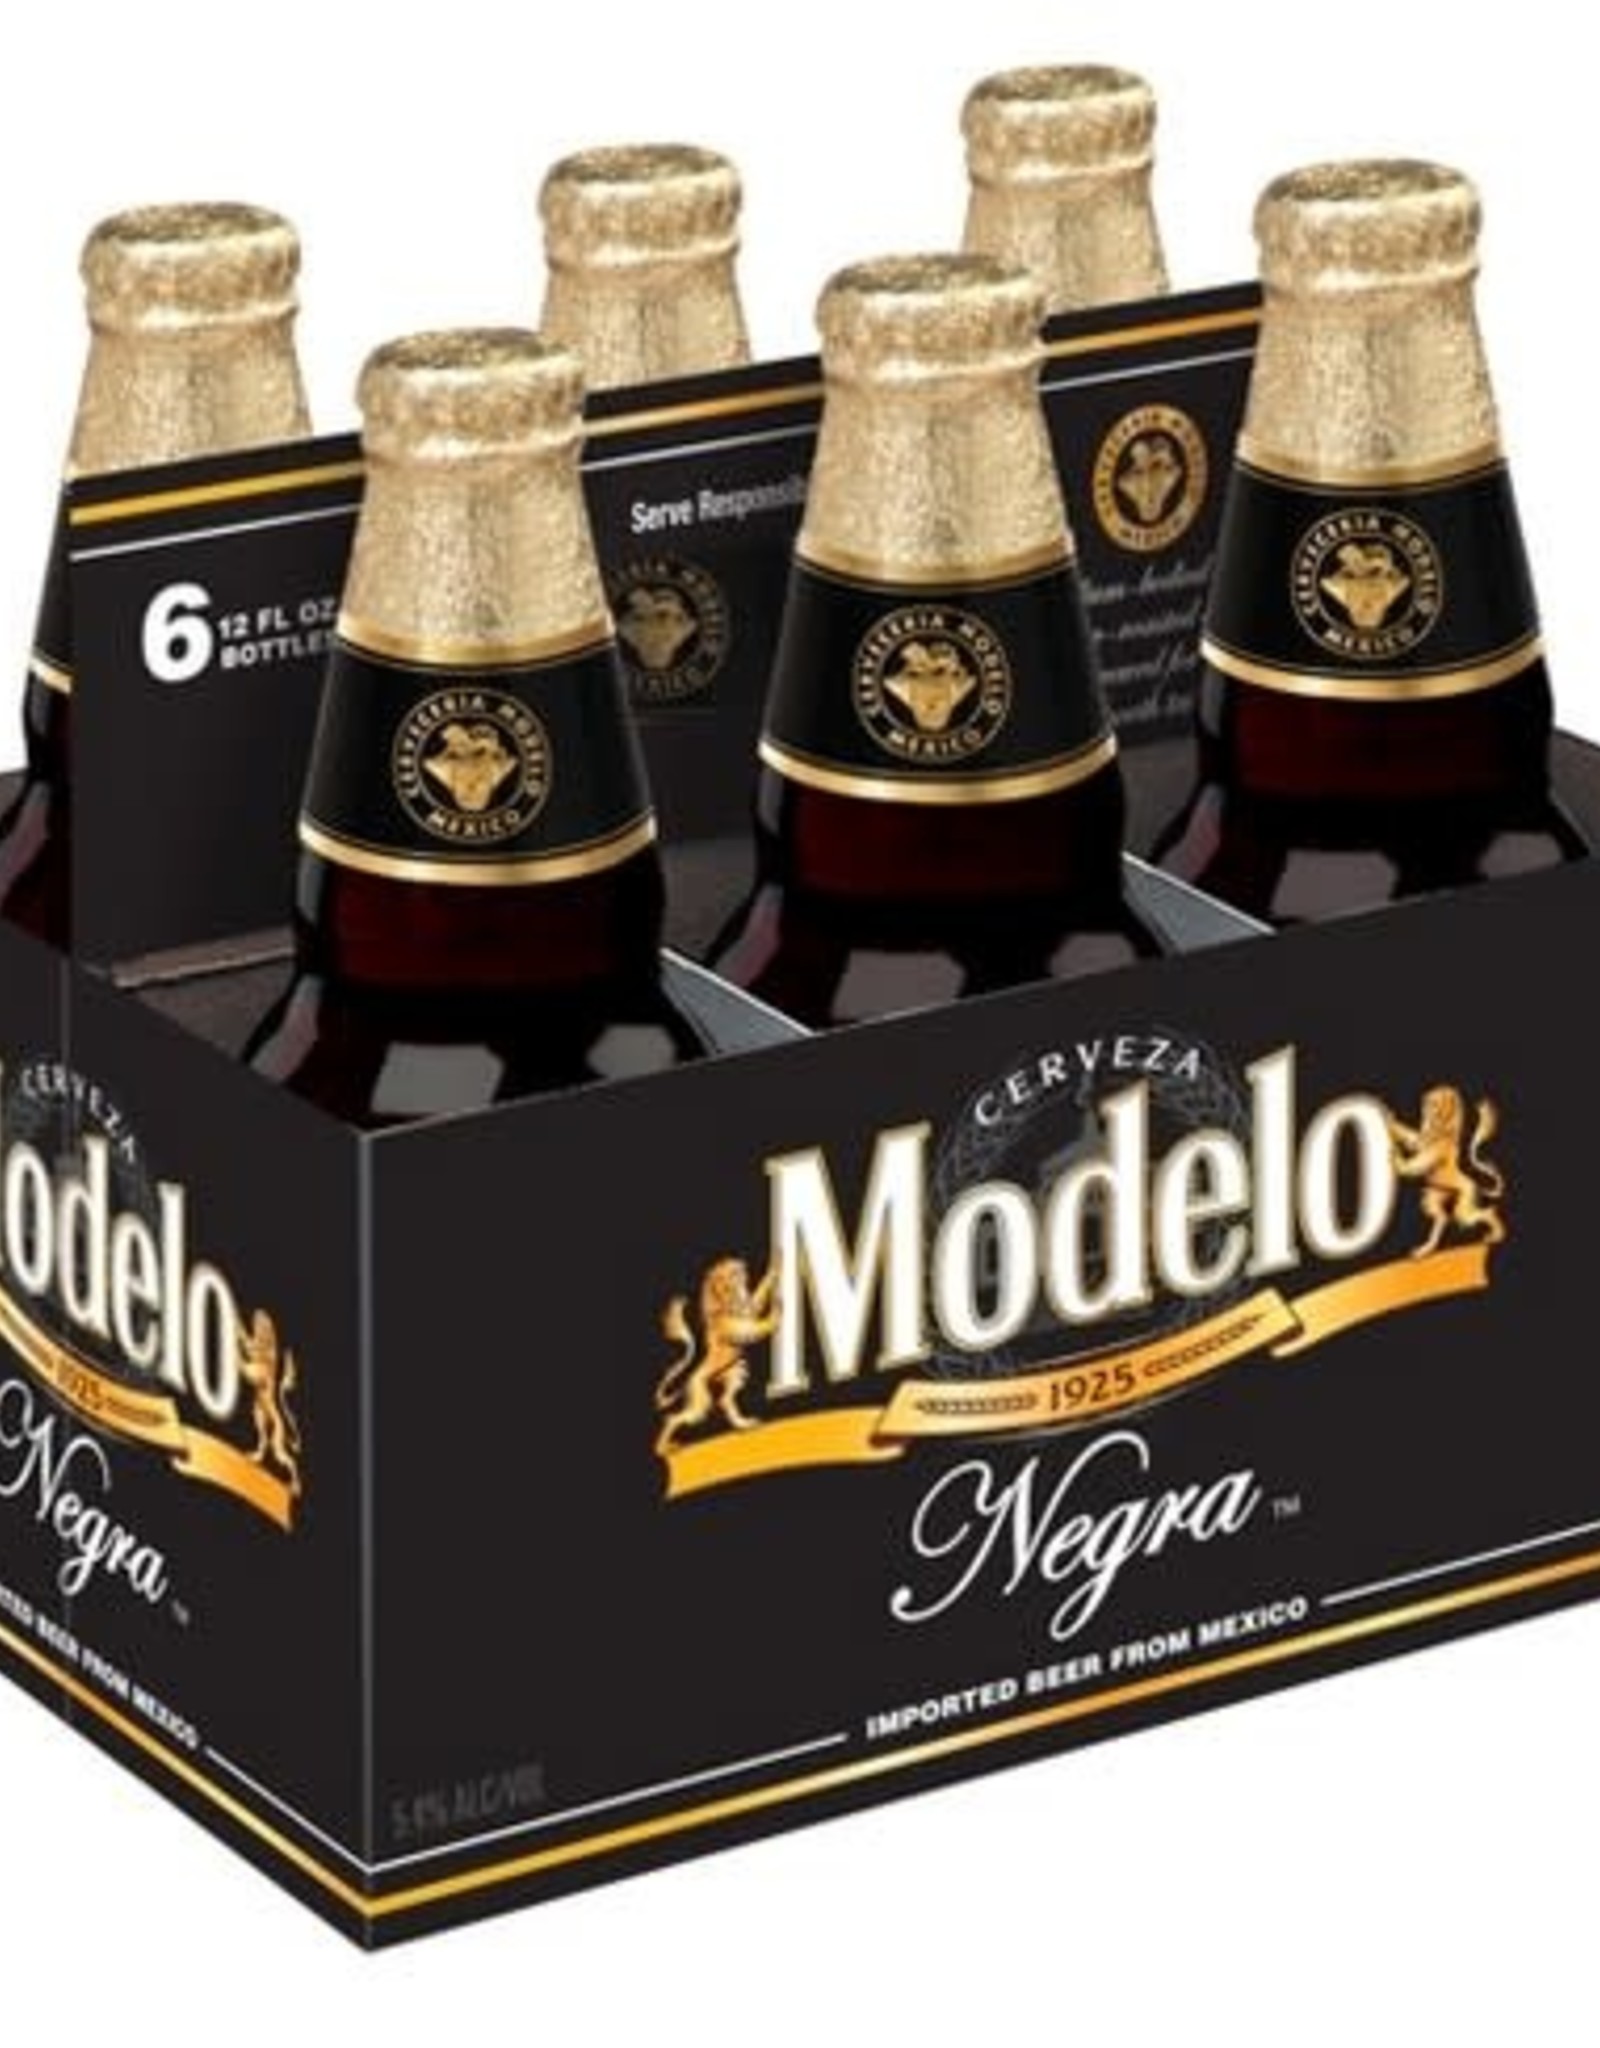 Modelo Modelo Negra Bottle